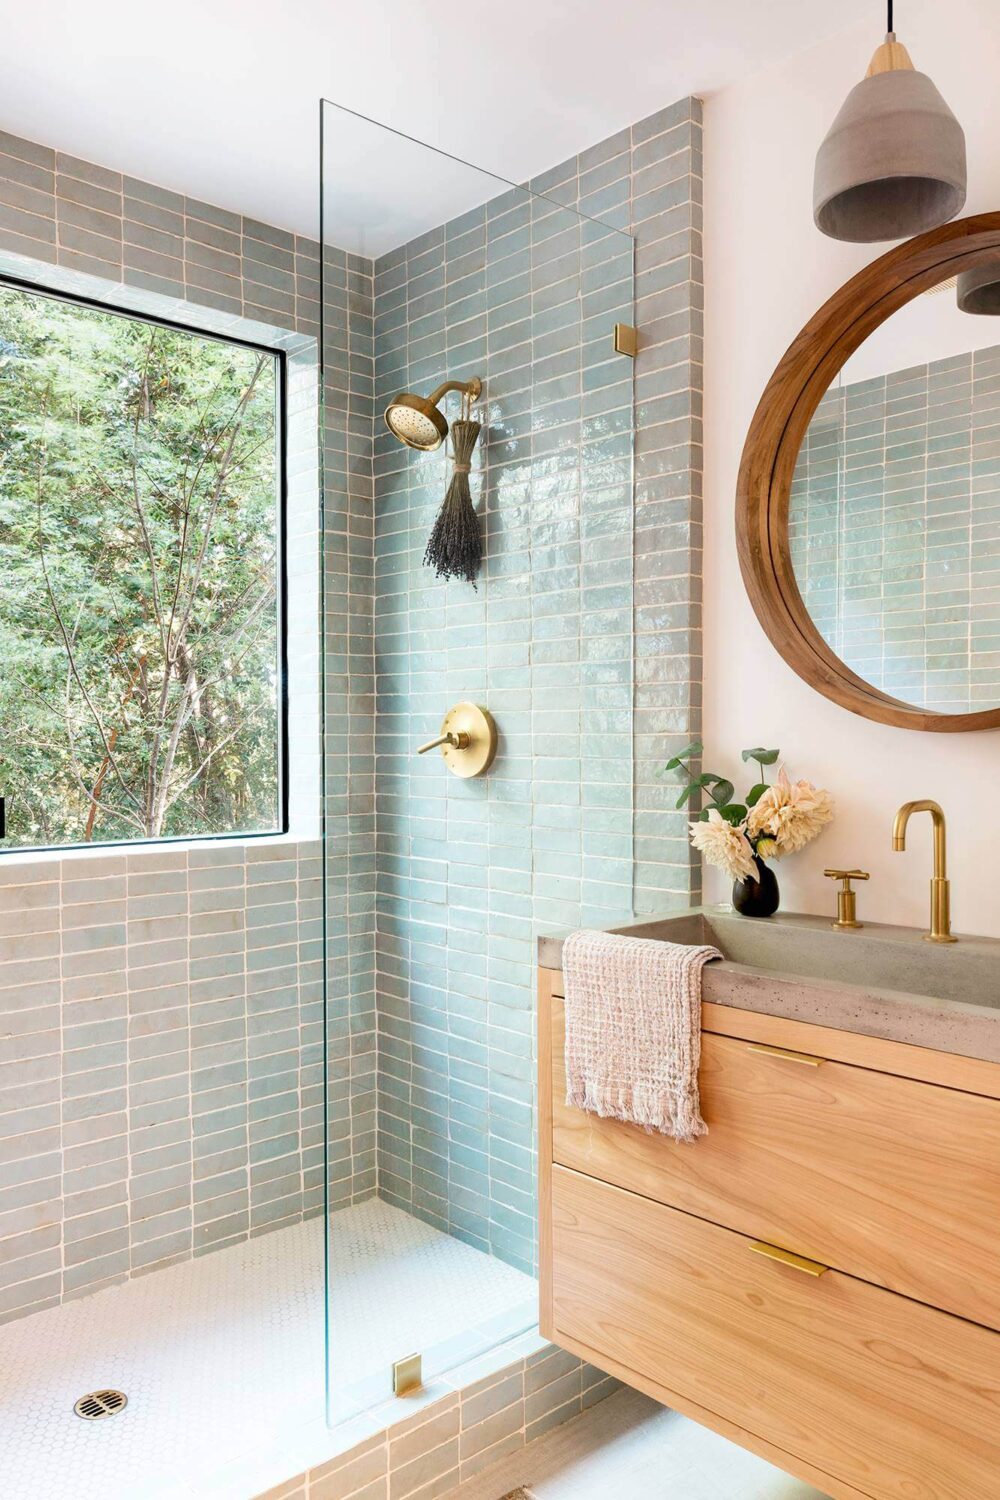 4 màu gạch tuyệt vời giúp phòng tắm nhỏ trở nên đẹp và rộng hơn - Ảnh 5